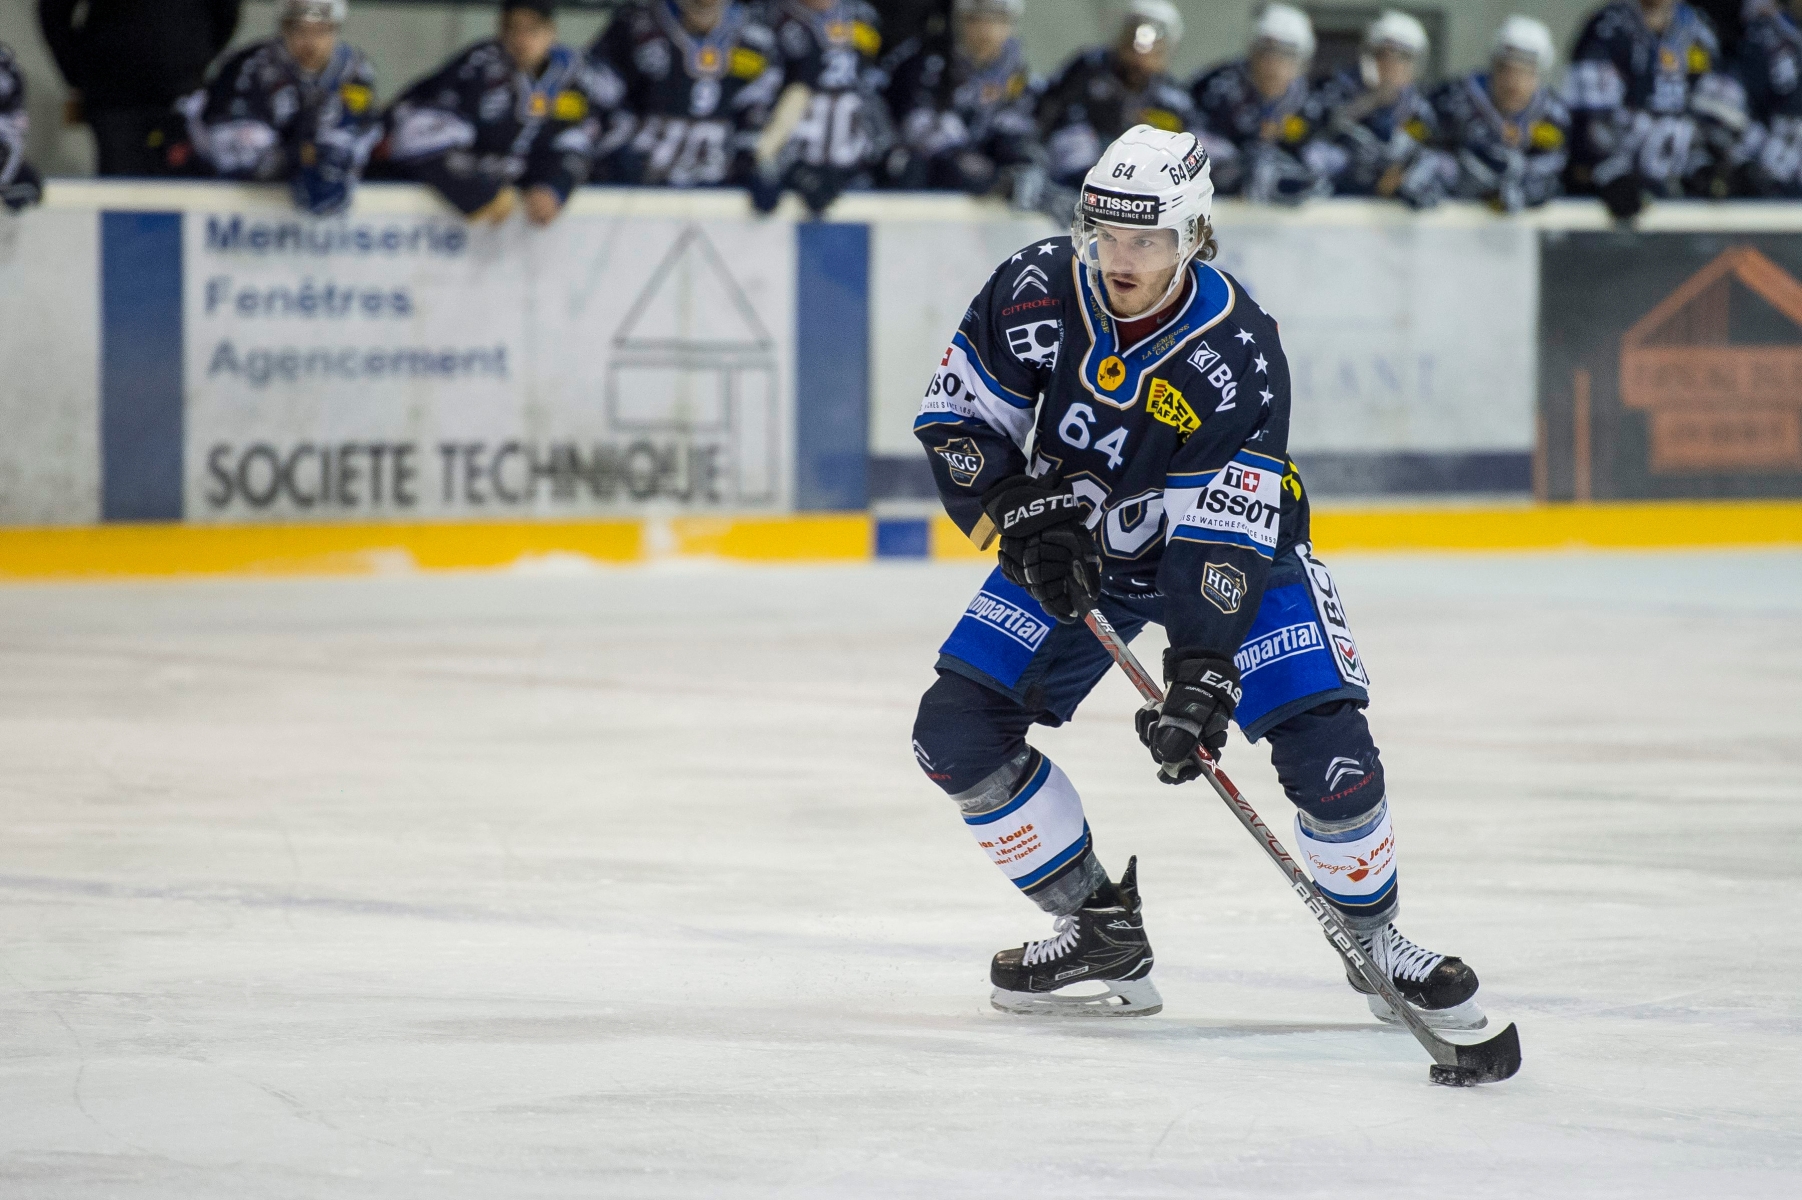 Hockey sur glace. HCC - GCK Lions
Daniel Eigenmann (64)

La Chaux-de-Fonds, le 08.10.2016
Photo : Lucas Vuitel HOCKEY SUR GLACE